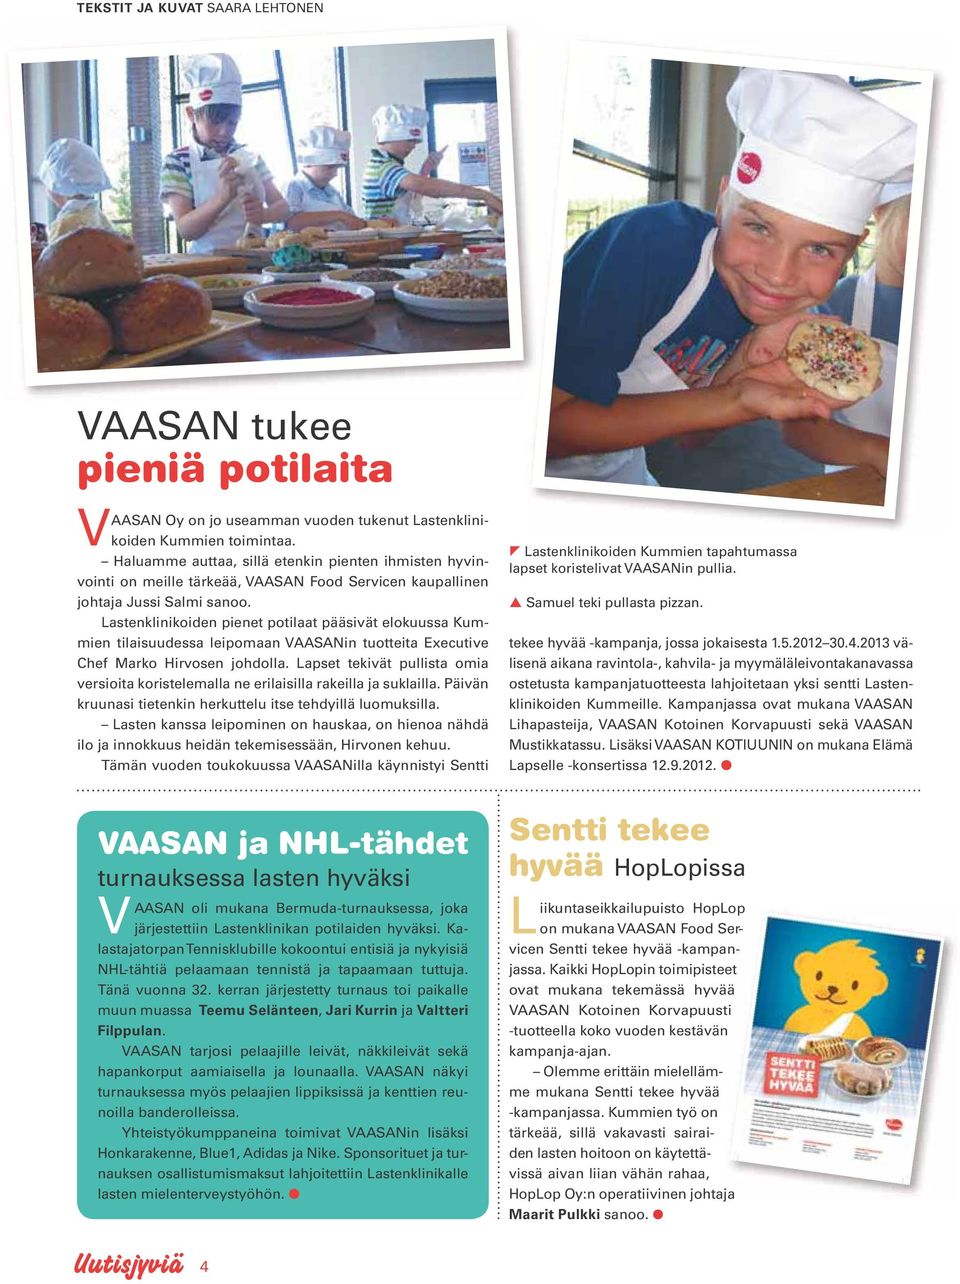 Lastenklinikoiden pienet potilaat pääsivät elokuussa Kummien tilaisuudessa leipomaan VAASANin tuotteita Executive Chef Marko Hirvosen johdolla.